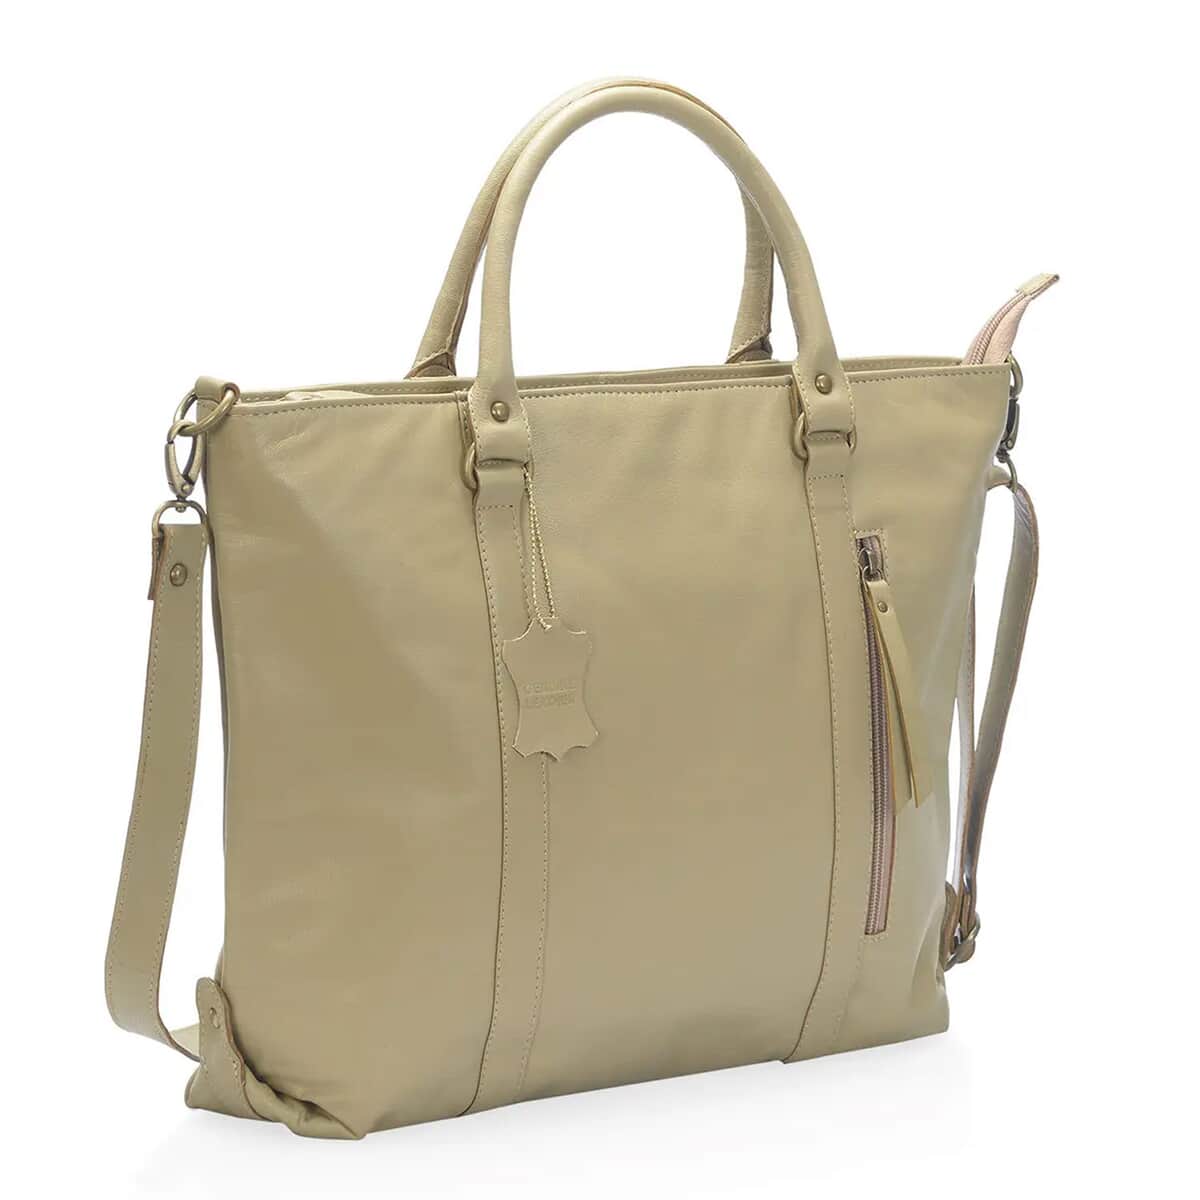 Sand Leather Handbag with Detachable Shoulder Strap image number 4